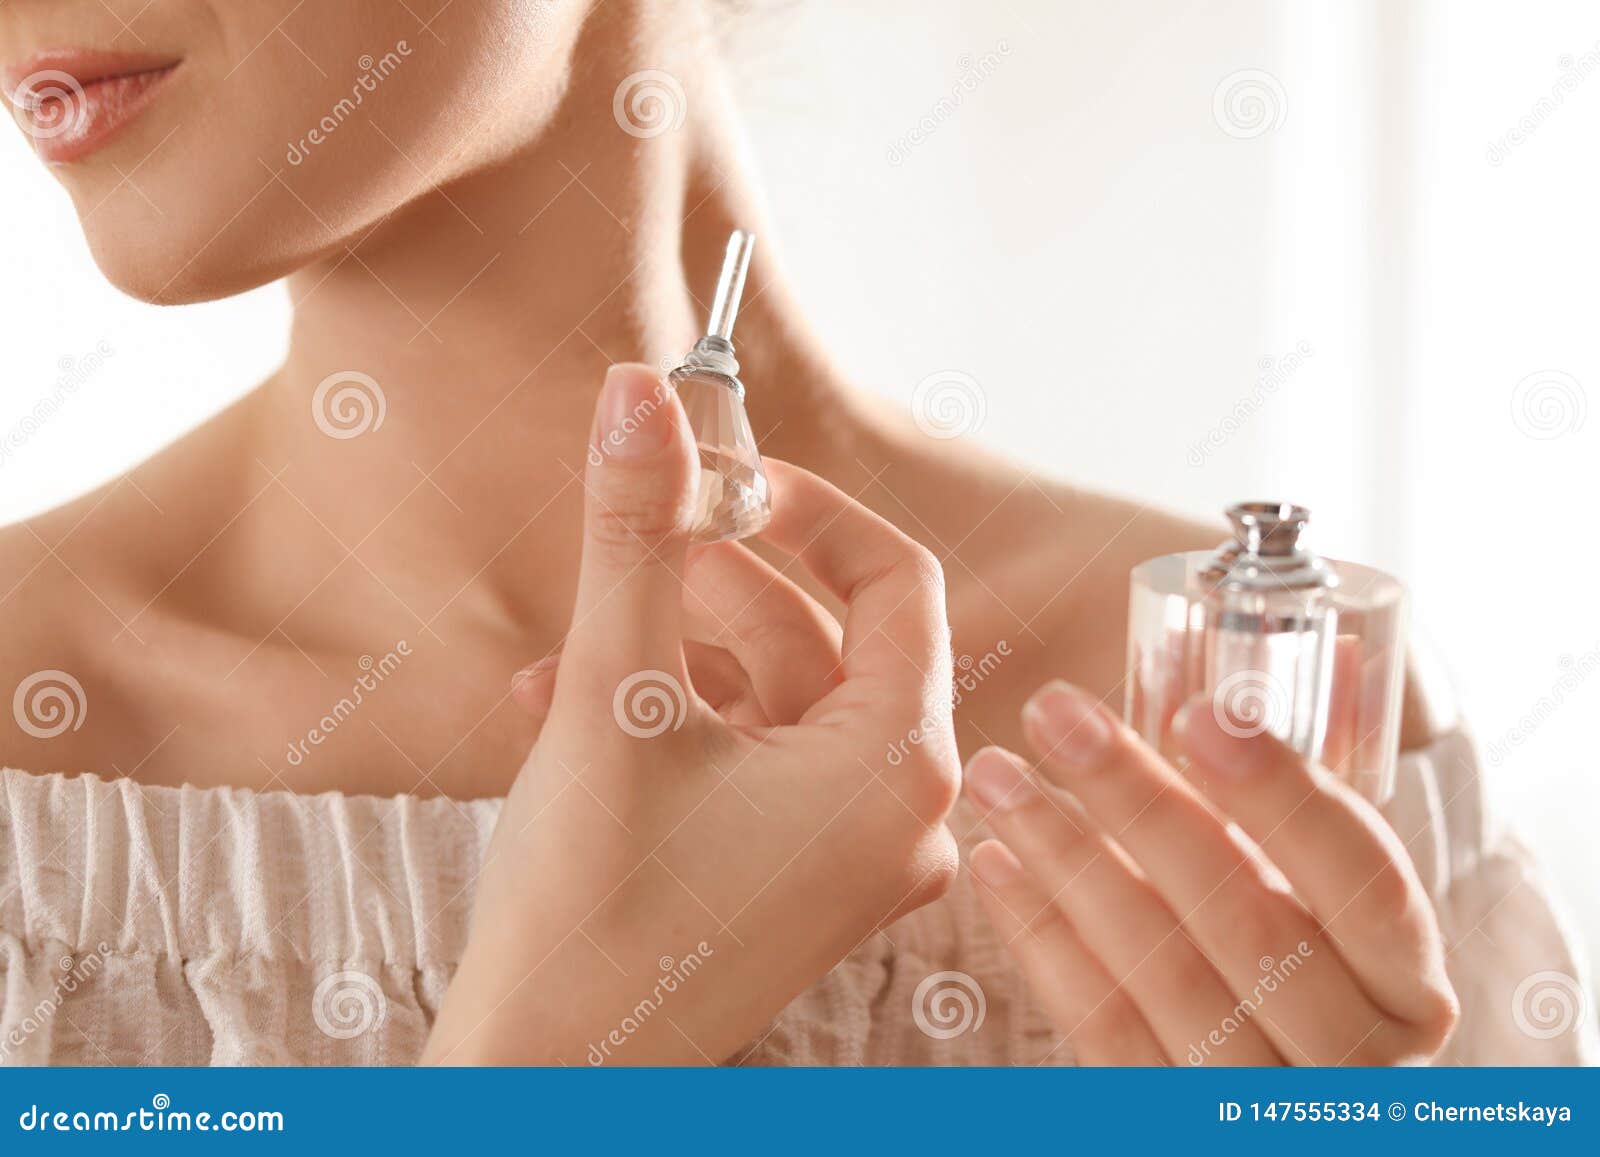 Духи после душа. Девушка с парфюмом. Нанесение духов на шею. Красивая девушка с парфюмом. Нанесение парфюма.